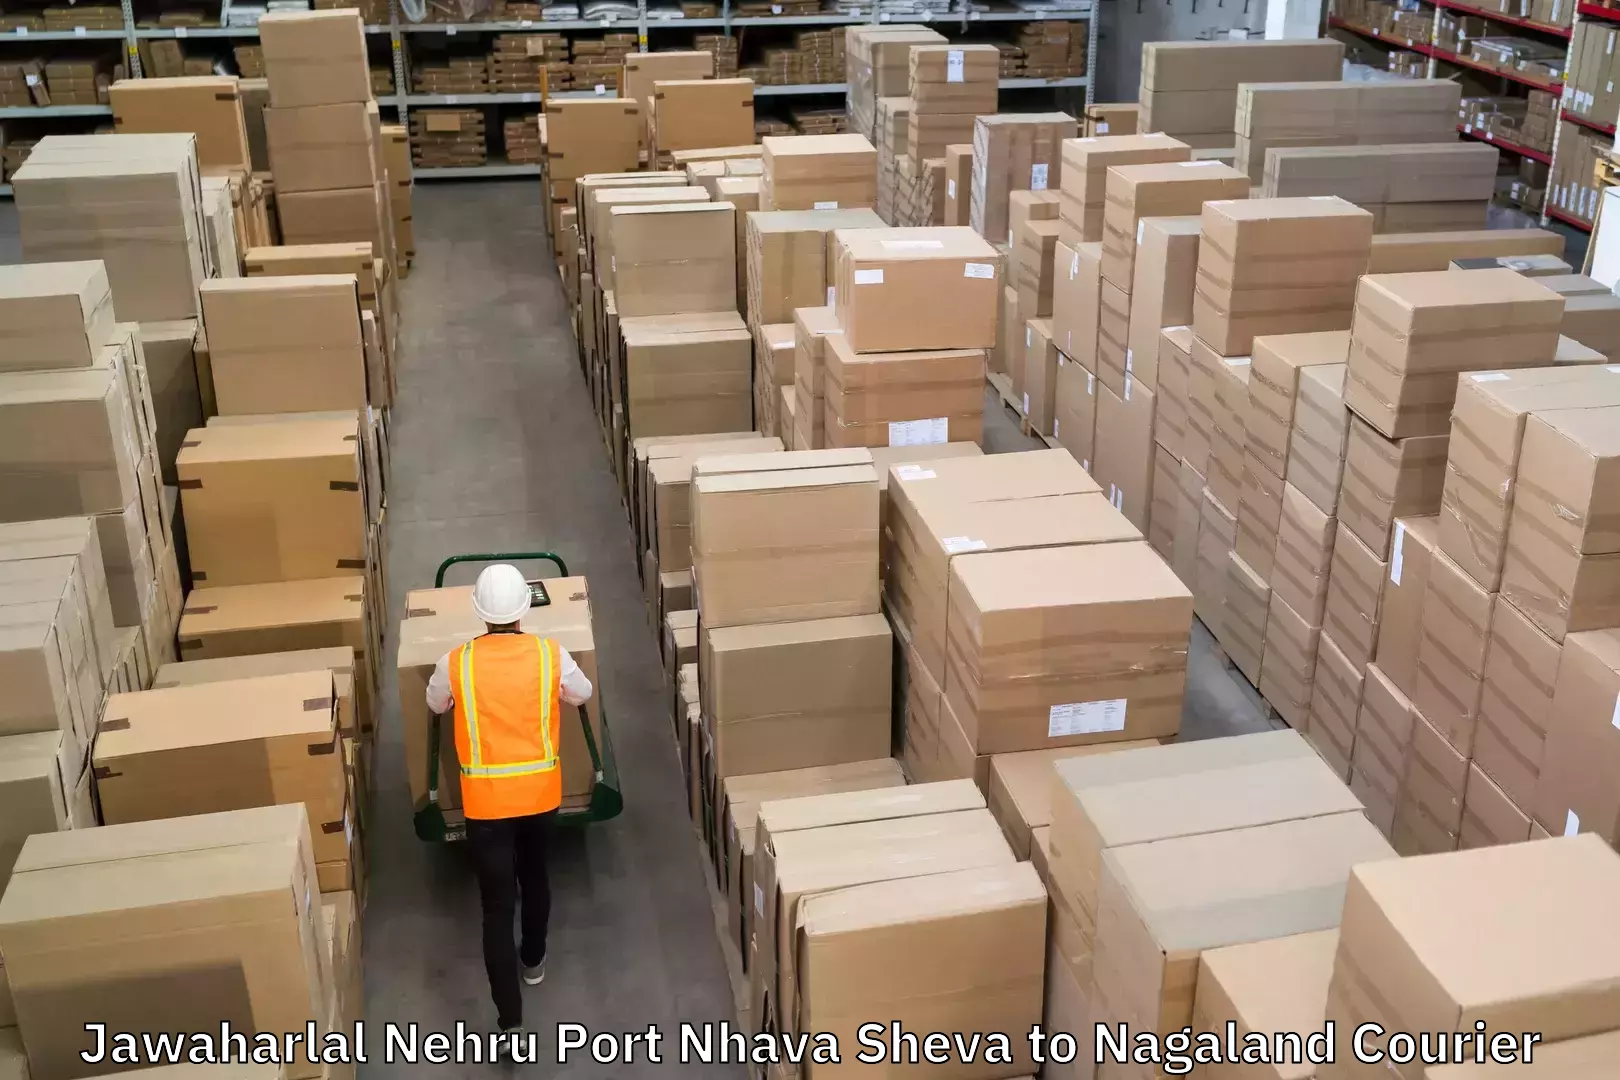 Special handling courier Jawaharlal Nehru Port Nhava Sheva to Nagaland